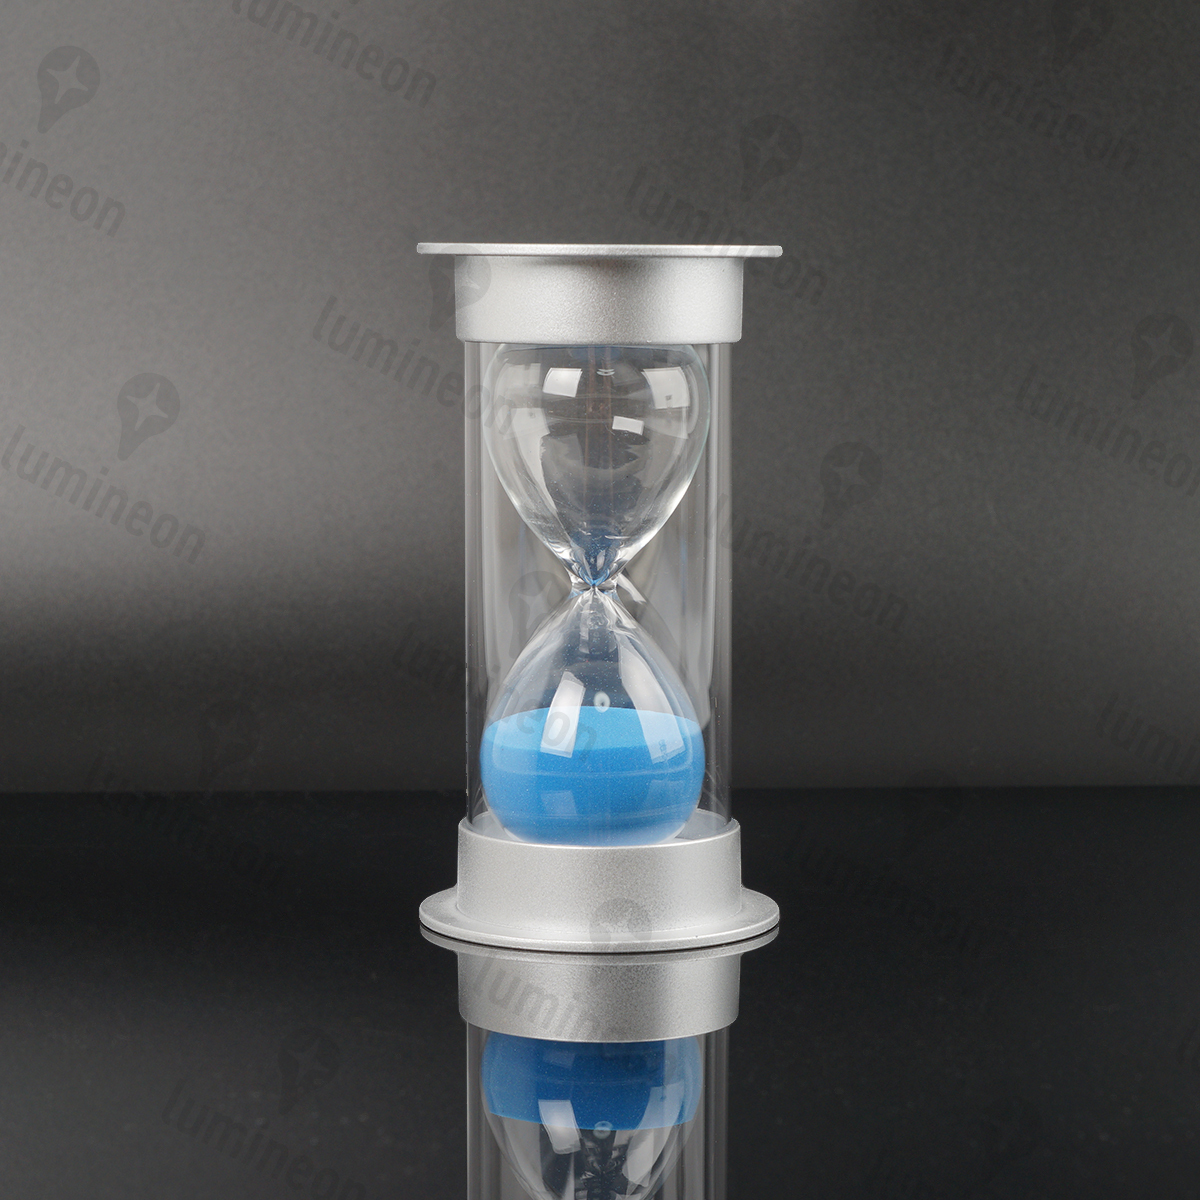 砂時計 25分 ブルー シルバー アクリル ガラス インテリア おしゃれ 置物 高級 長時間 子供 ギフト サンド タイマー プレゼント g065e 3_画像5